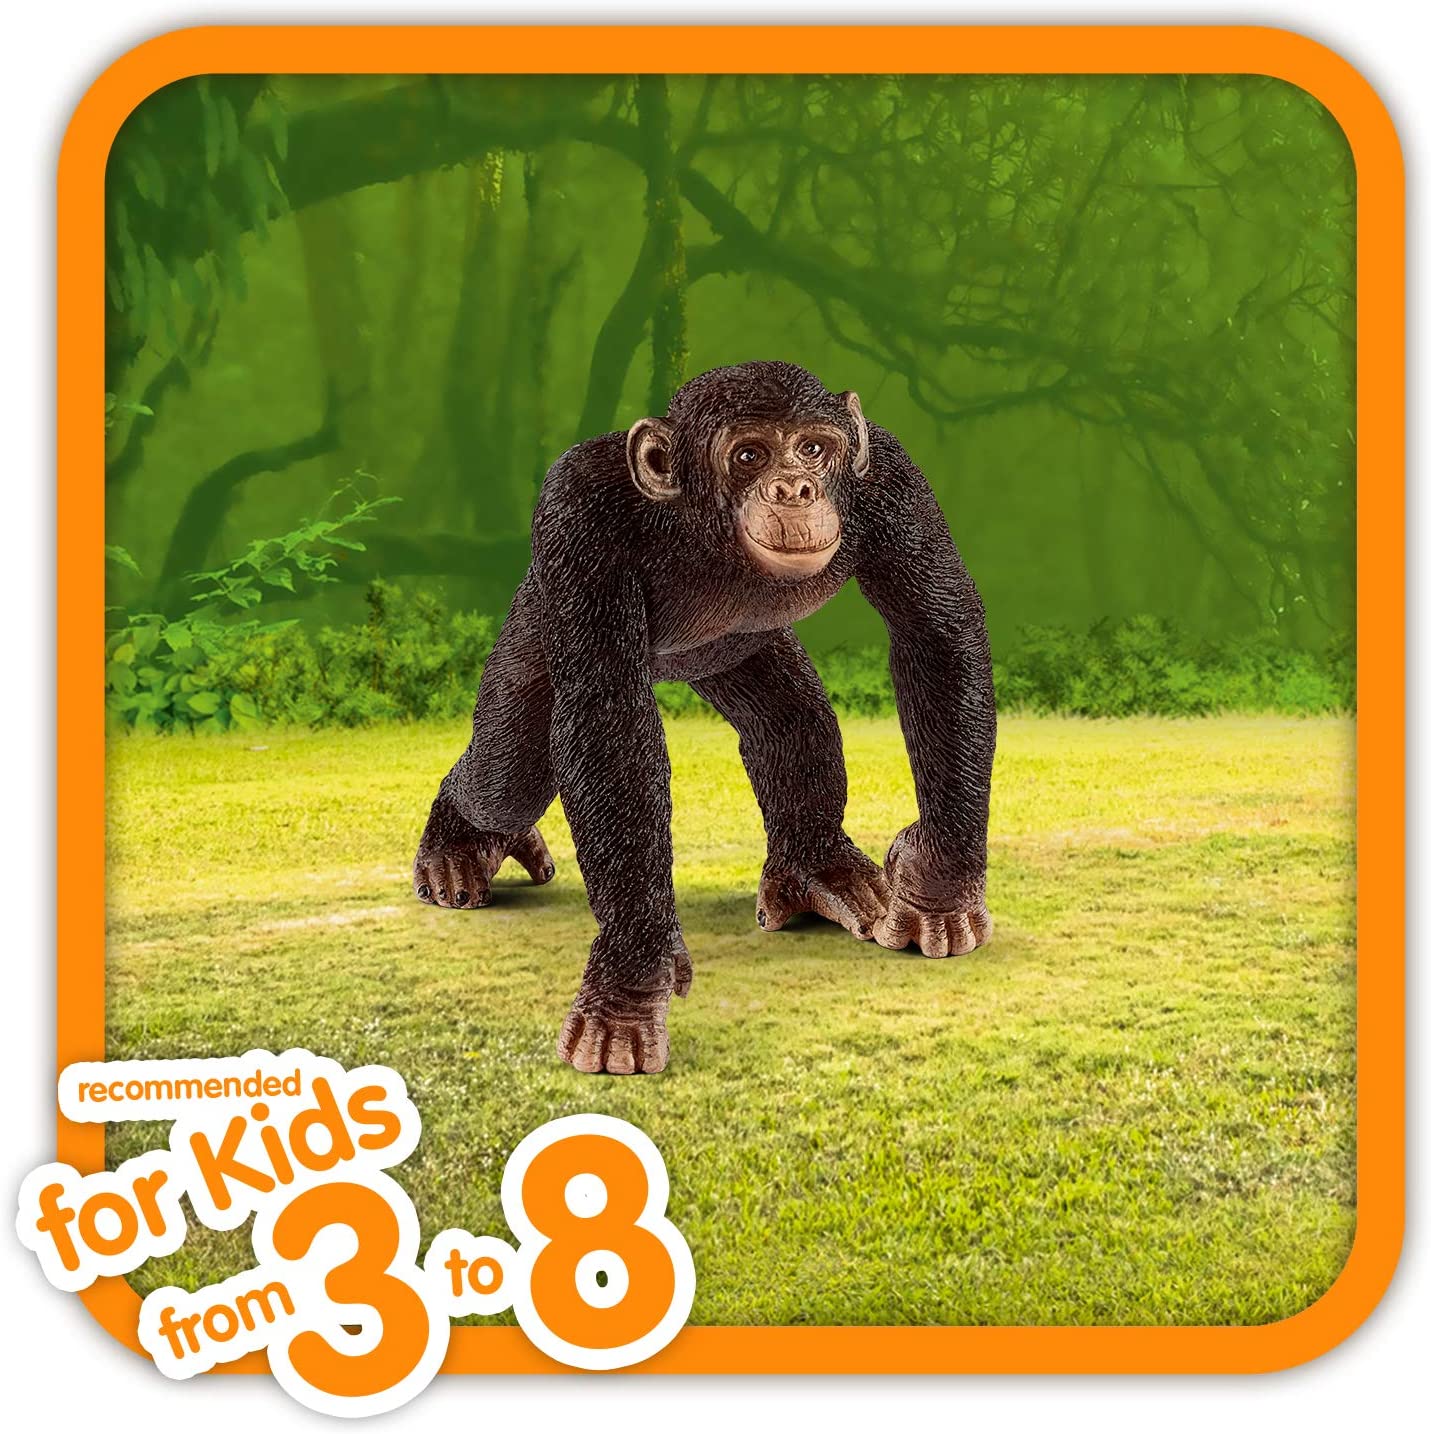 Schleich Chimpanzee Male